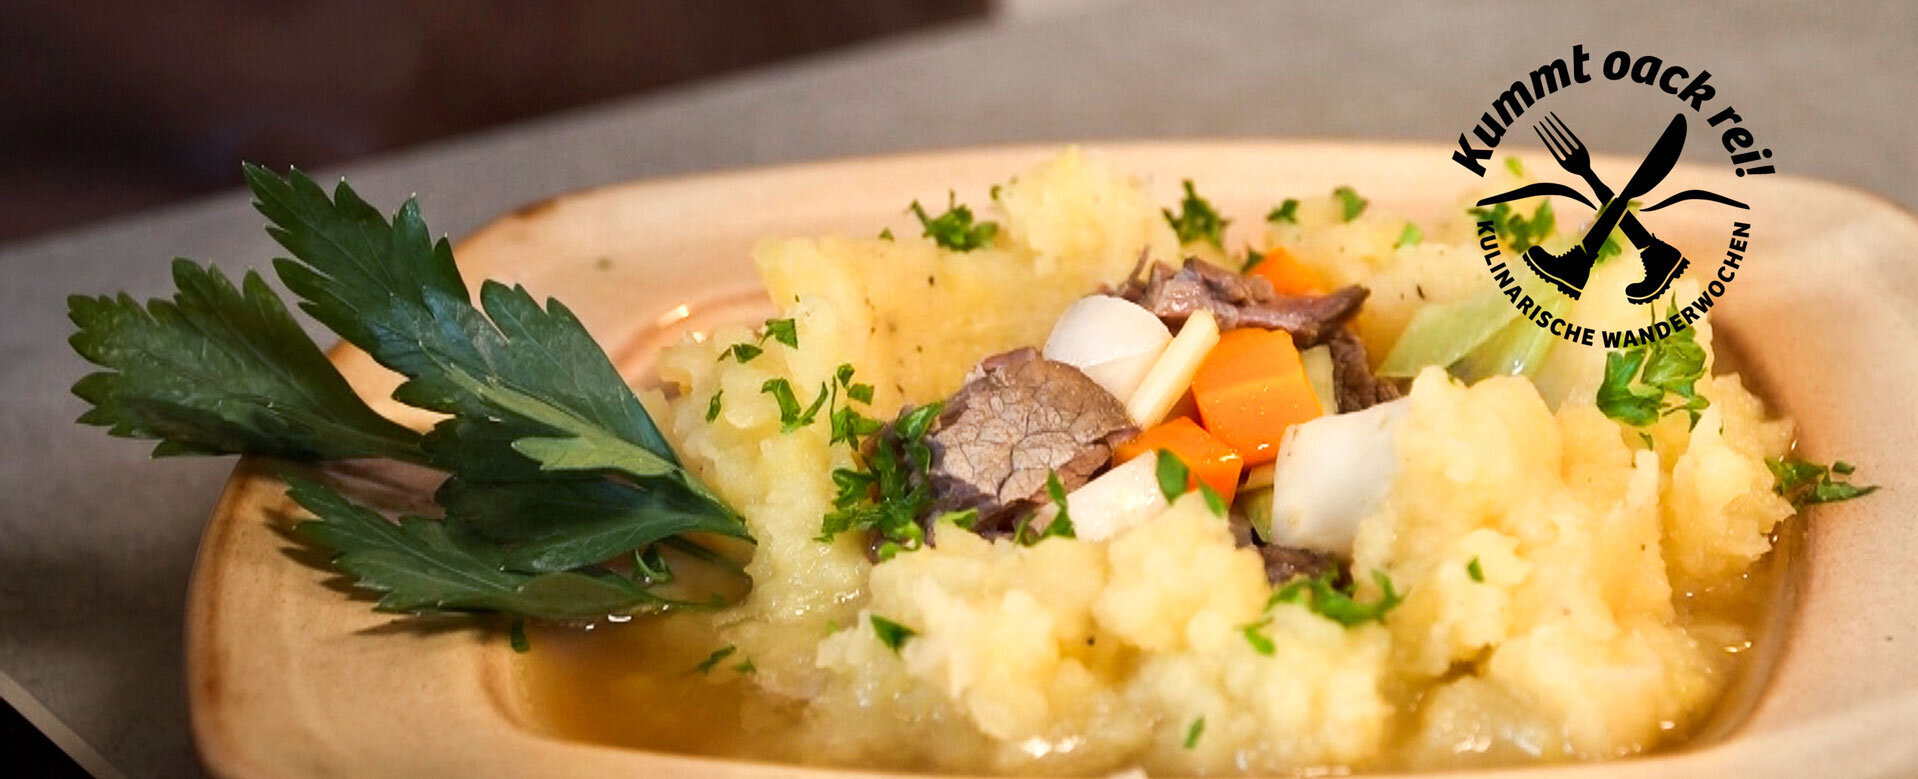 Bildausschnitt eines Eintopf-Gerichts mit Kartoffen, Fleisch und Gemüse, dazu eine Wort-Bild-Marke  